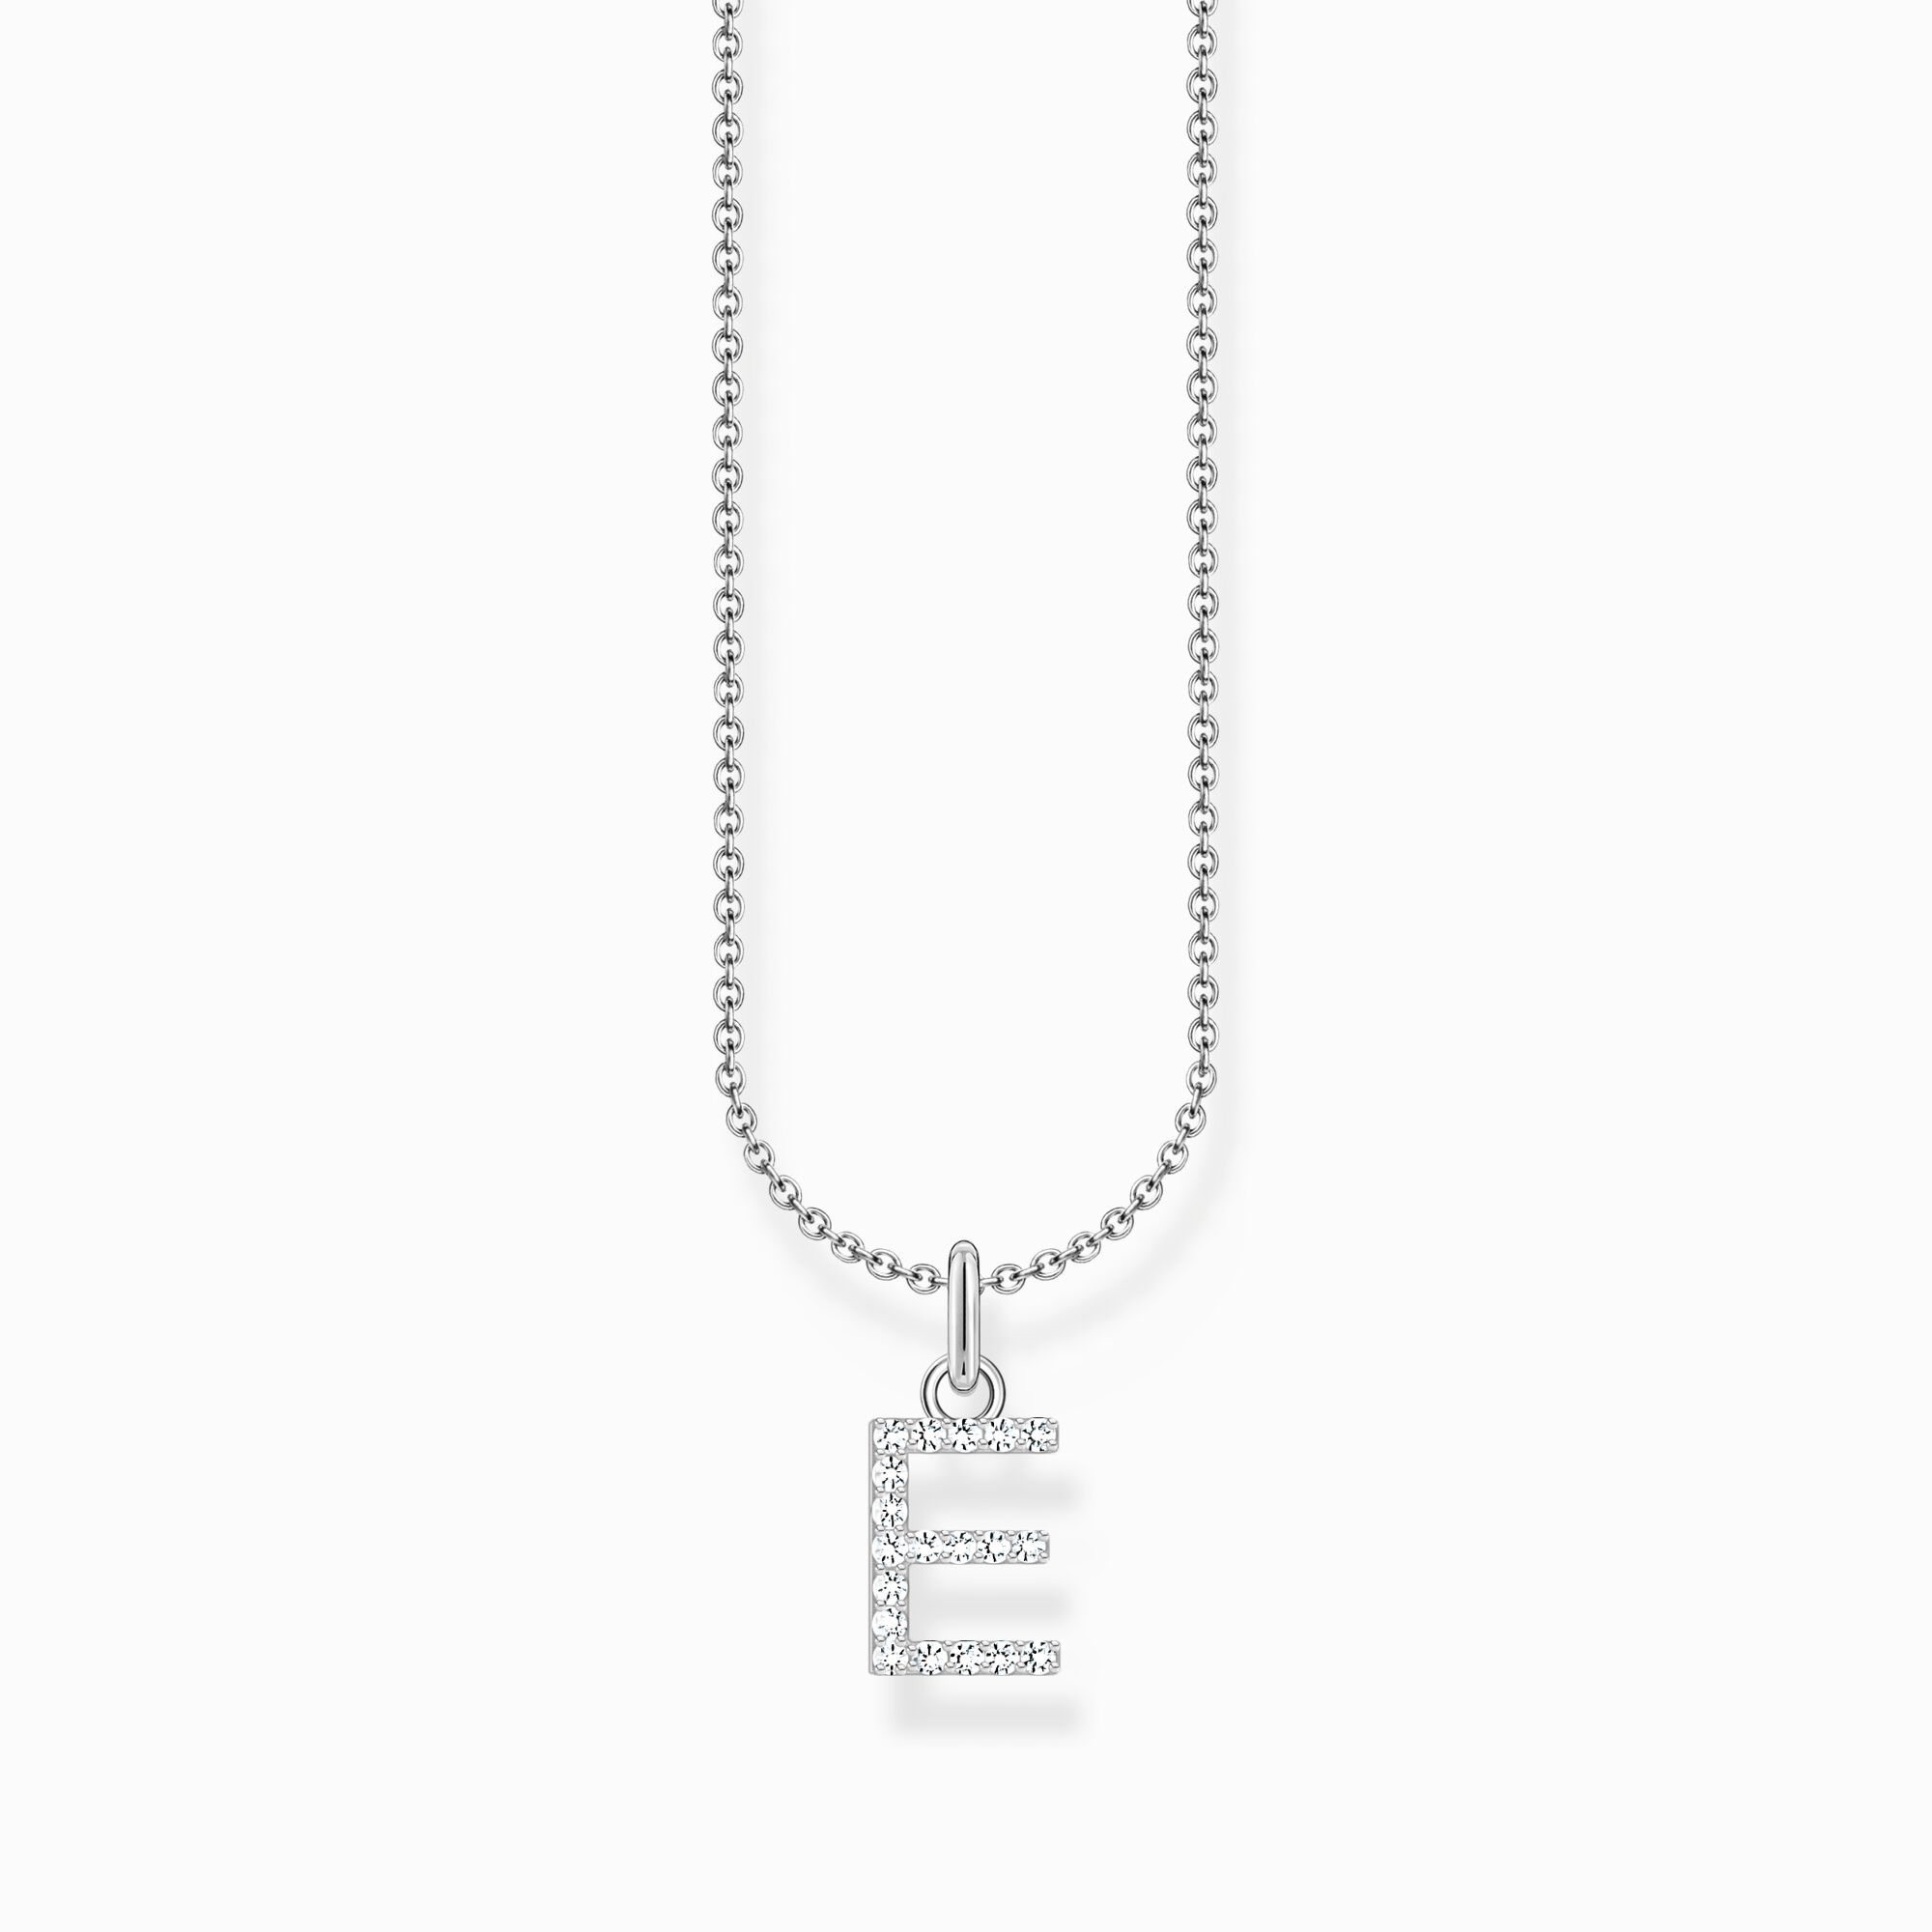 Halsband med bokstaven E, silver ur kollektionen Charming Collection i THOMAS SABO:s onlineshop